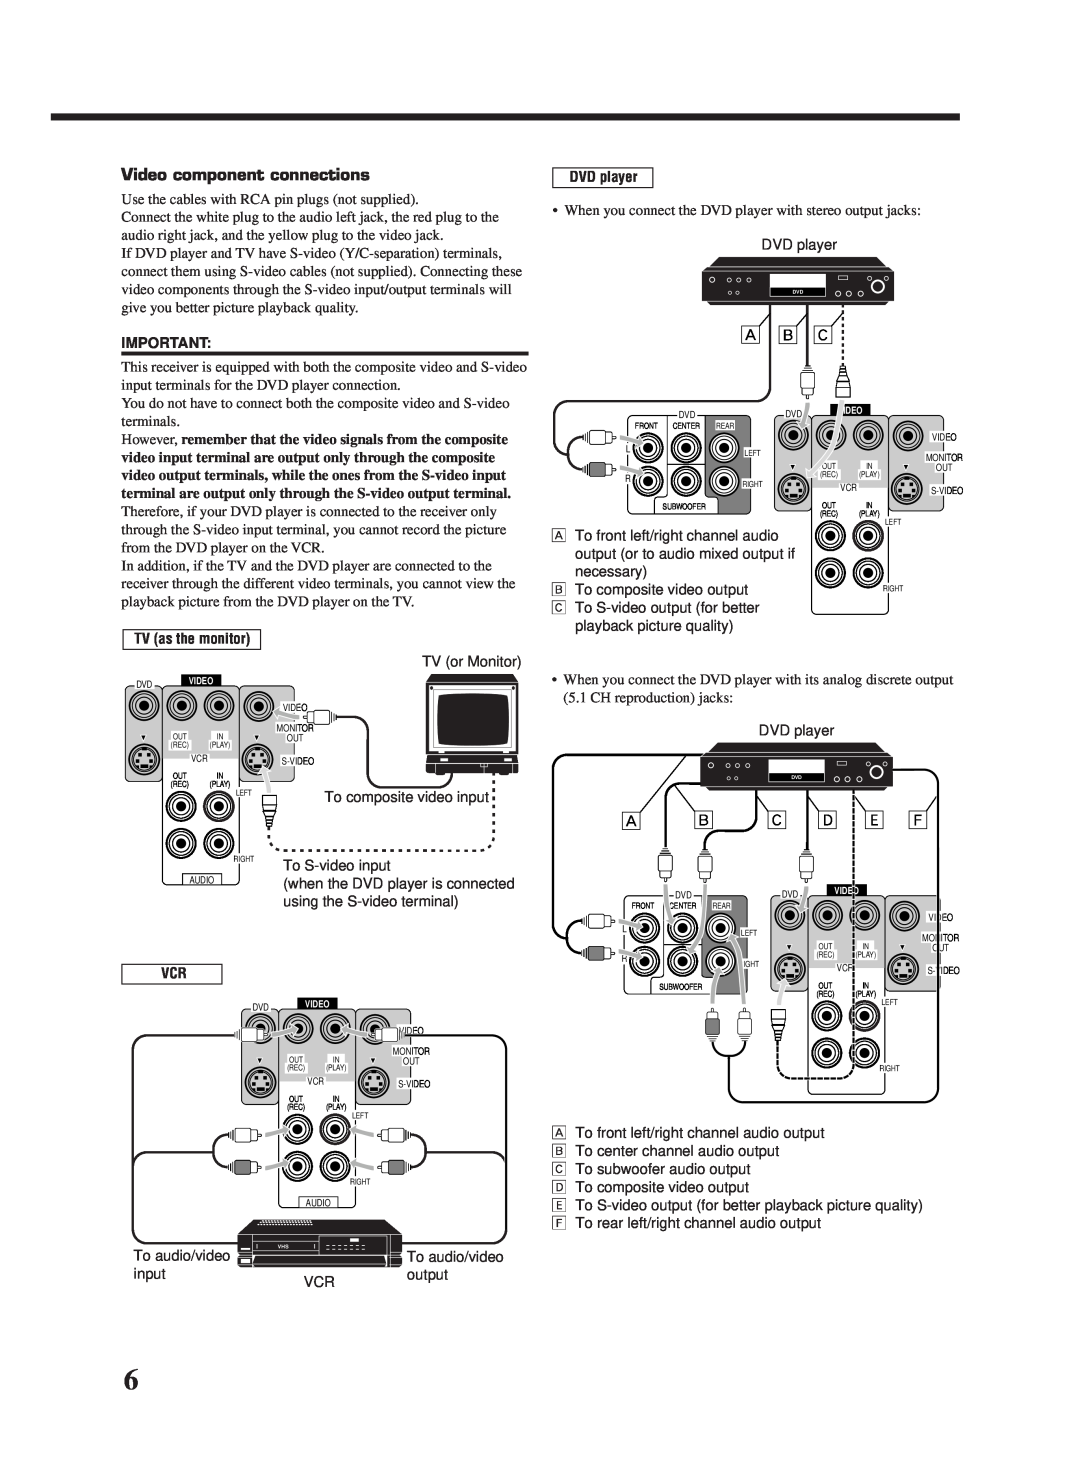 JVC RX-668VBK manual  ı ‚, ı ‚ º ä ì, Video component connections, DVD player, TV as the monitor 